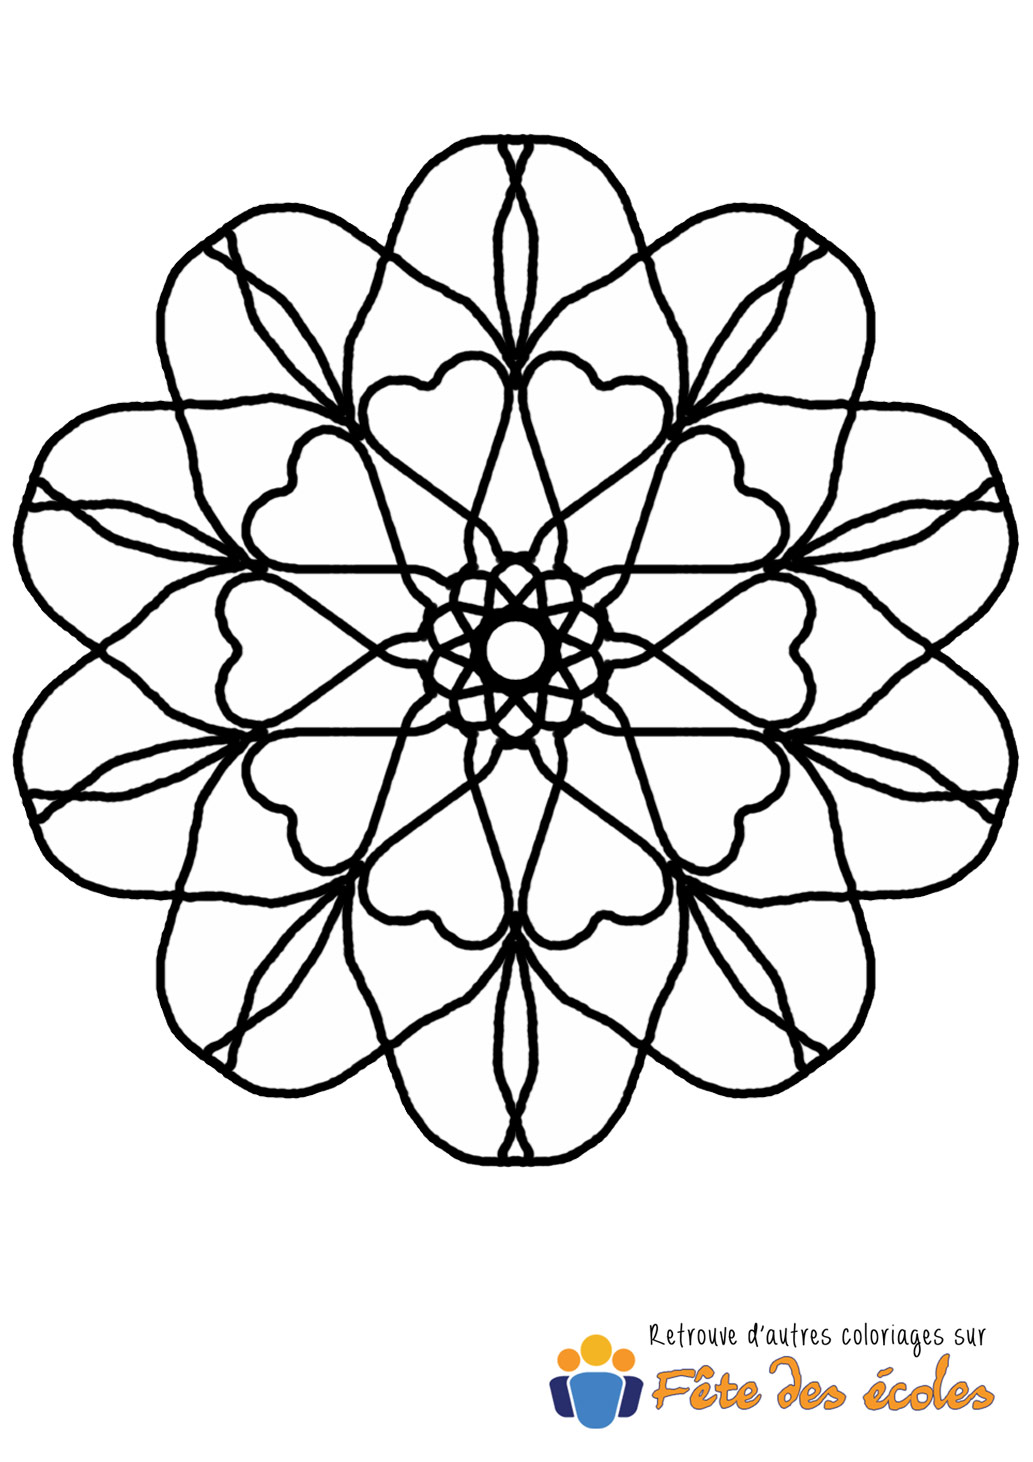 Coloriage de mandala en forme de fleur ou d'hexagone